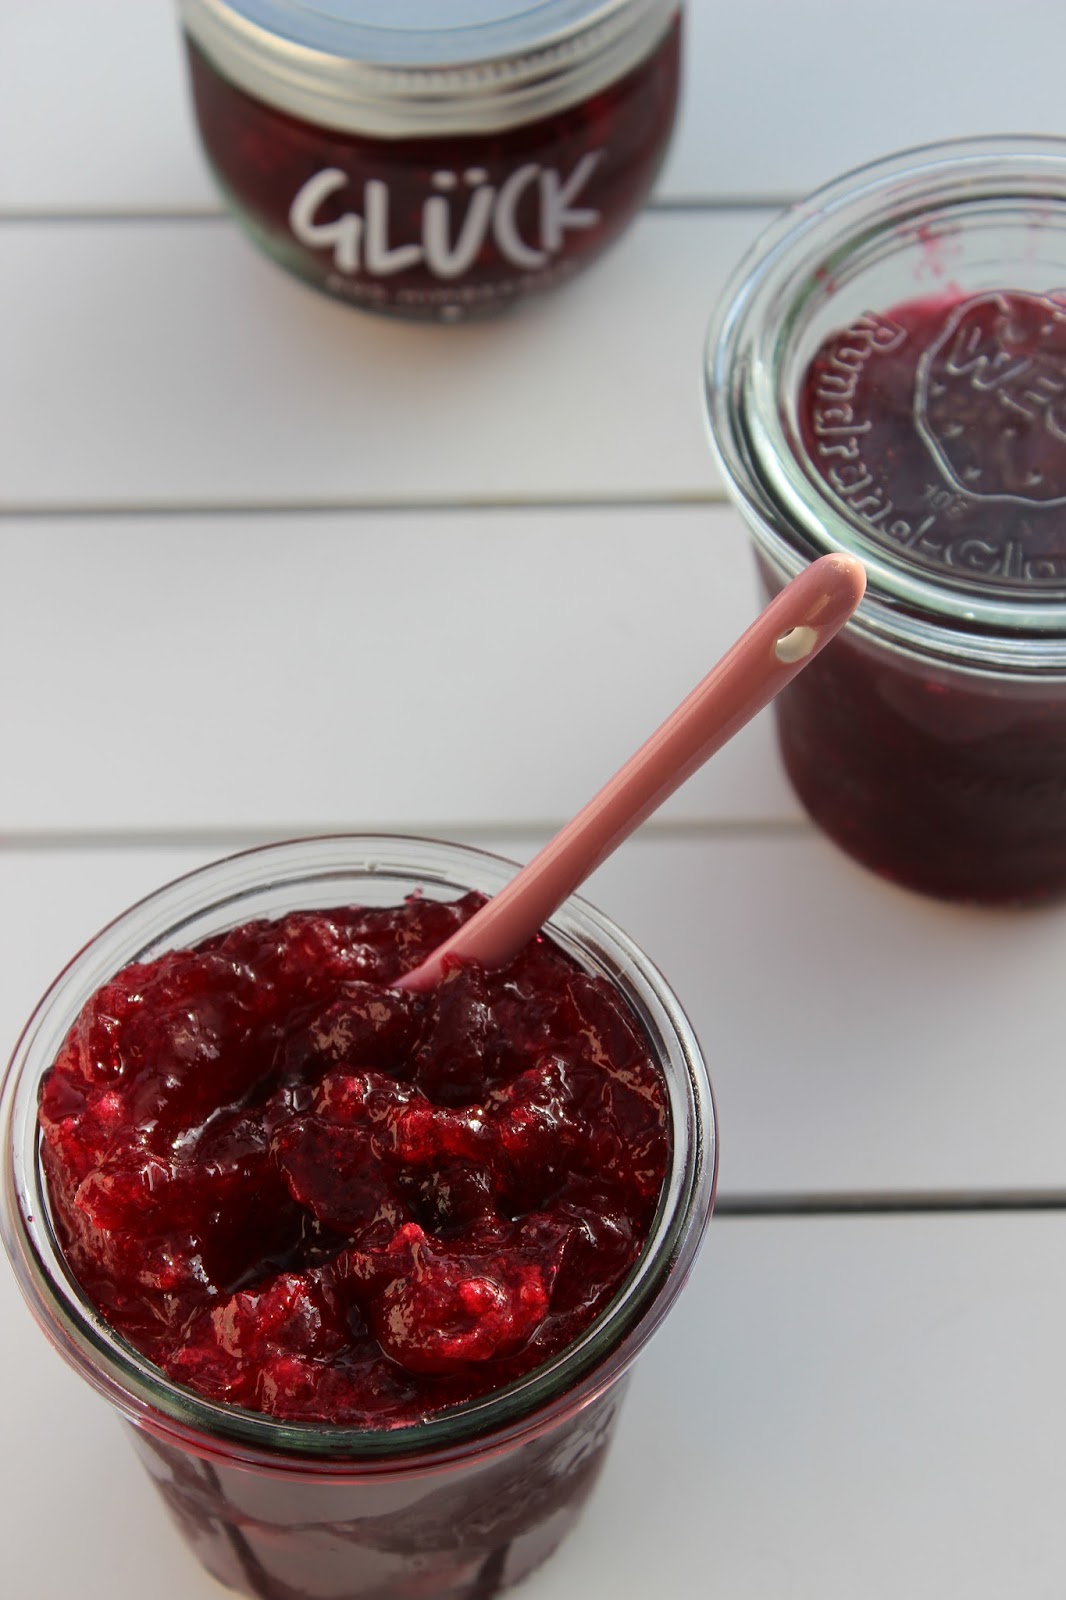 gruensteinKitchen: Cranberry Marmelade